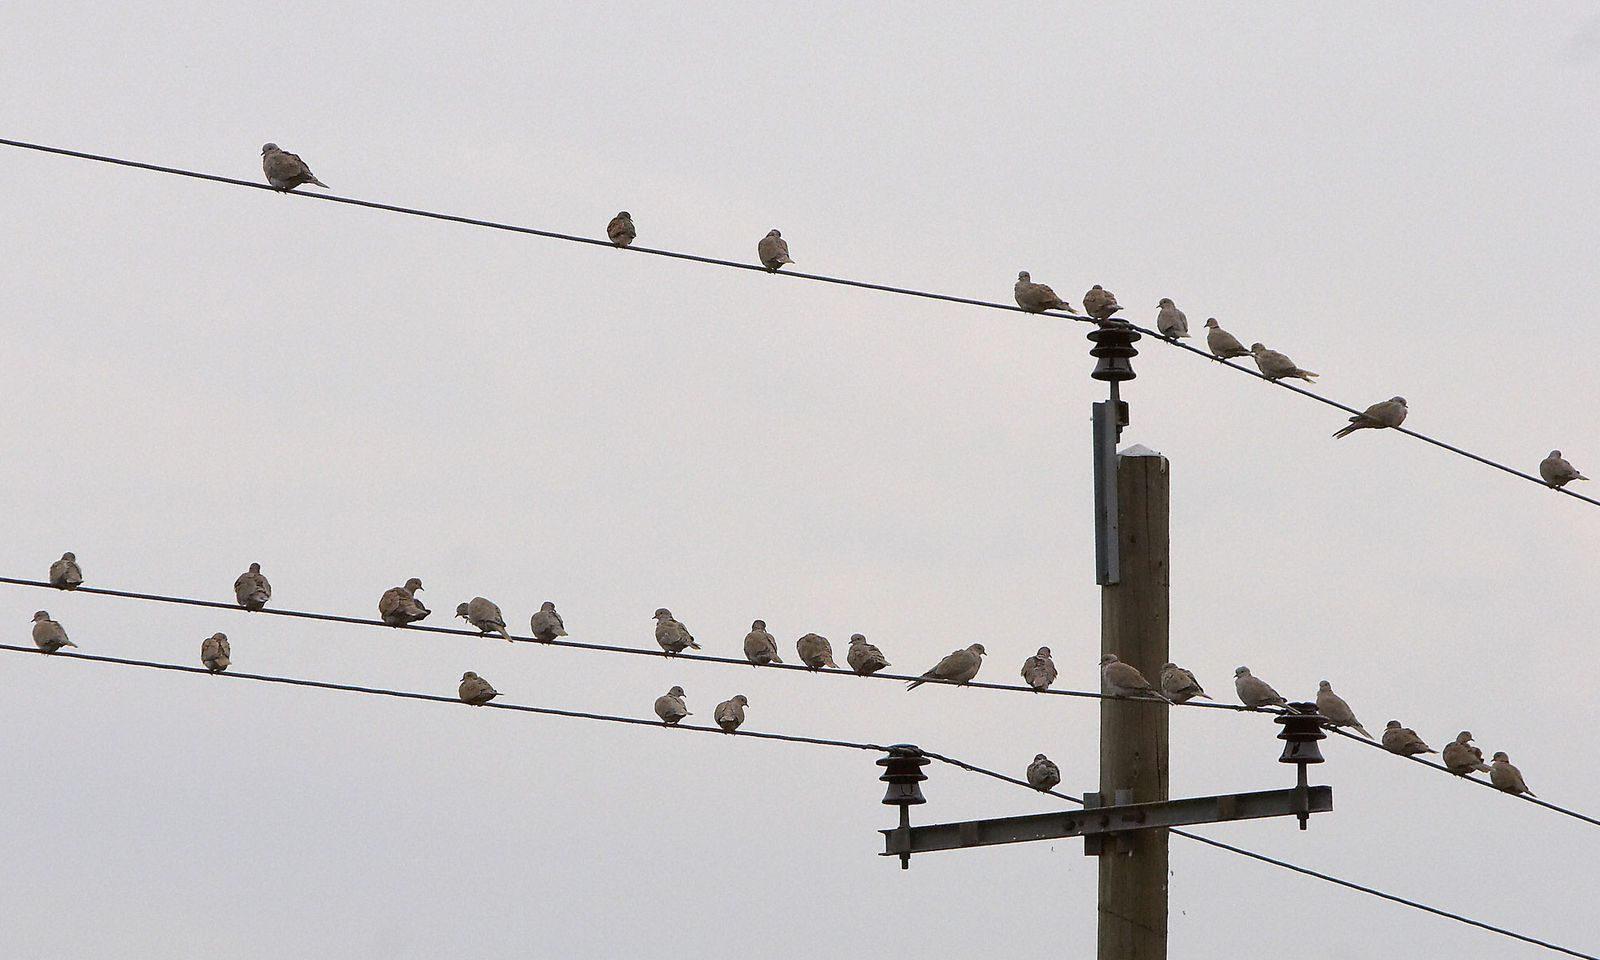 Warum Können Vögel Auf Stromleitungen Sitzen? | Diepresse bei Warum Können Vögel Auf Stromleitungen Sitzen